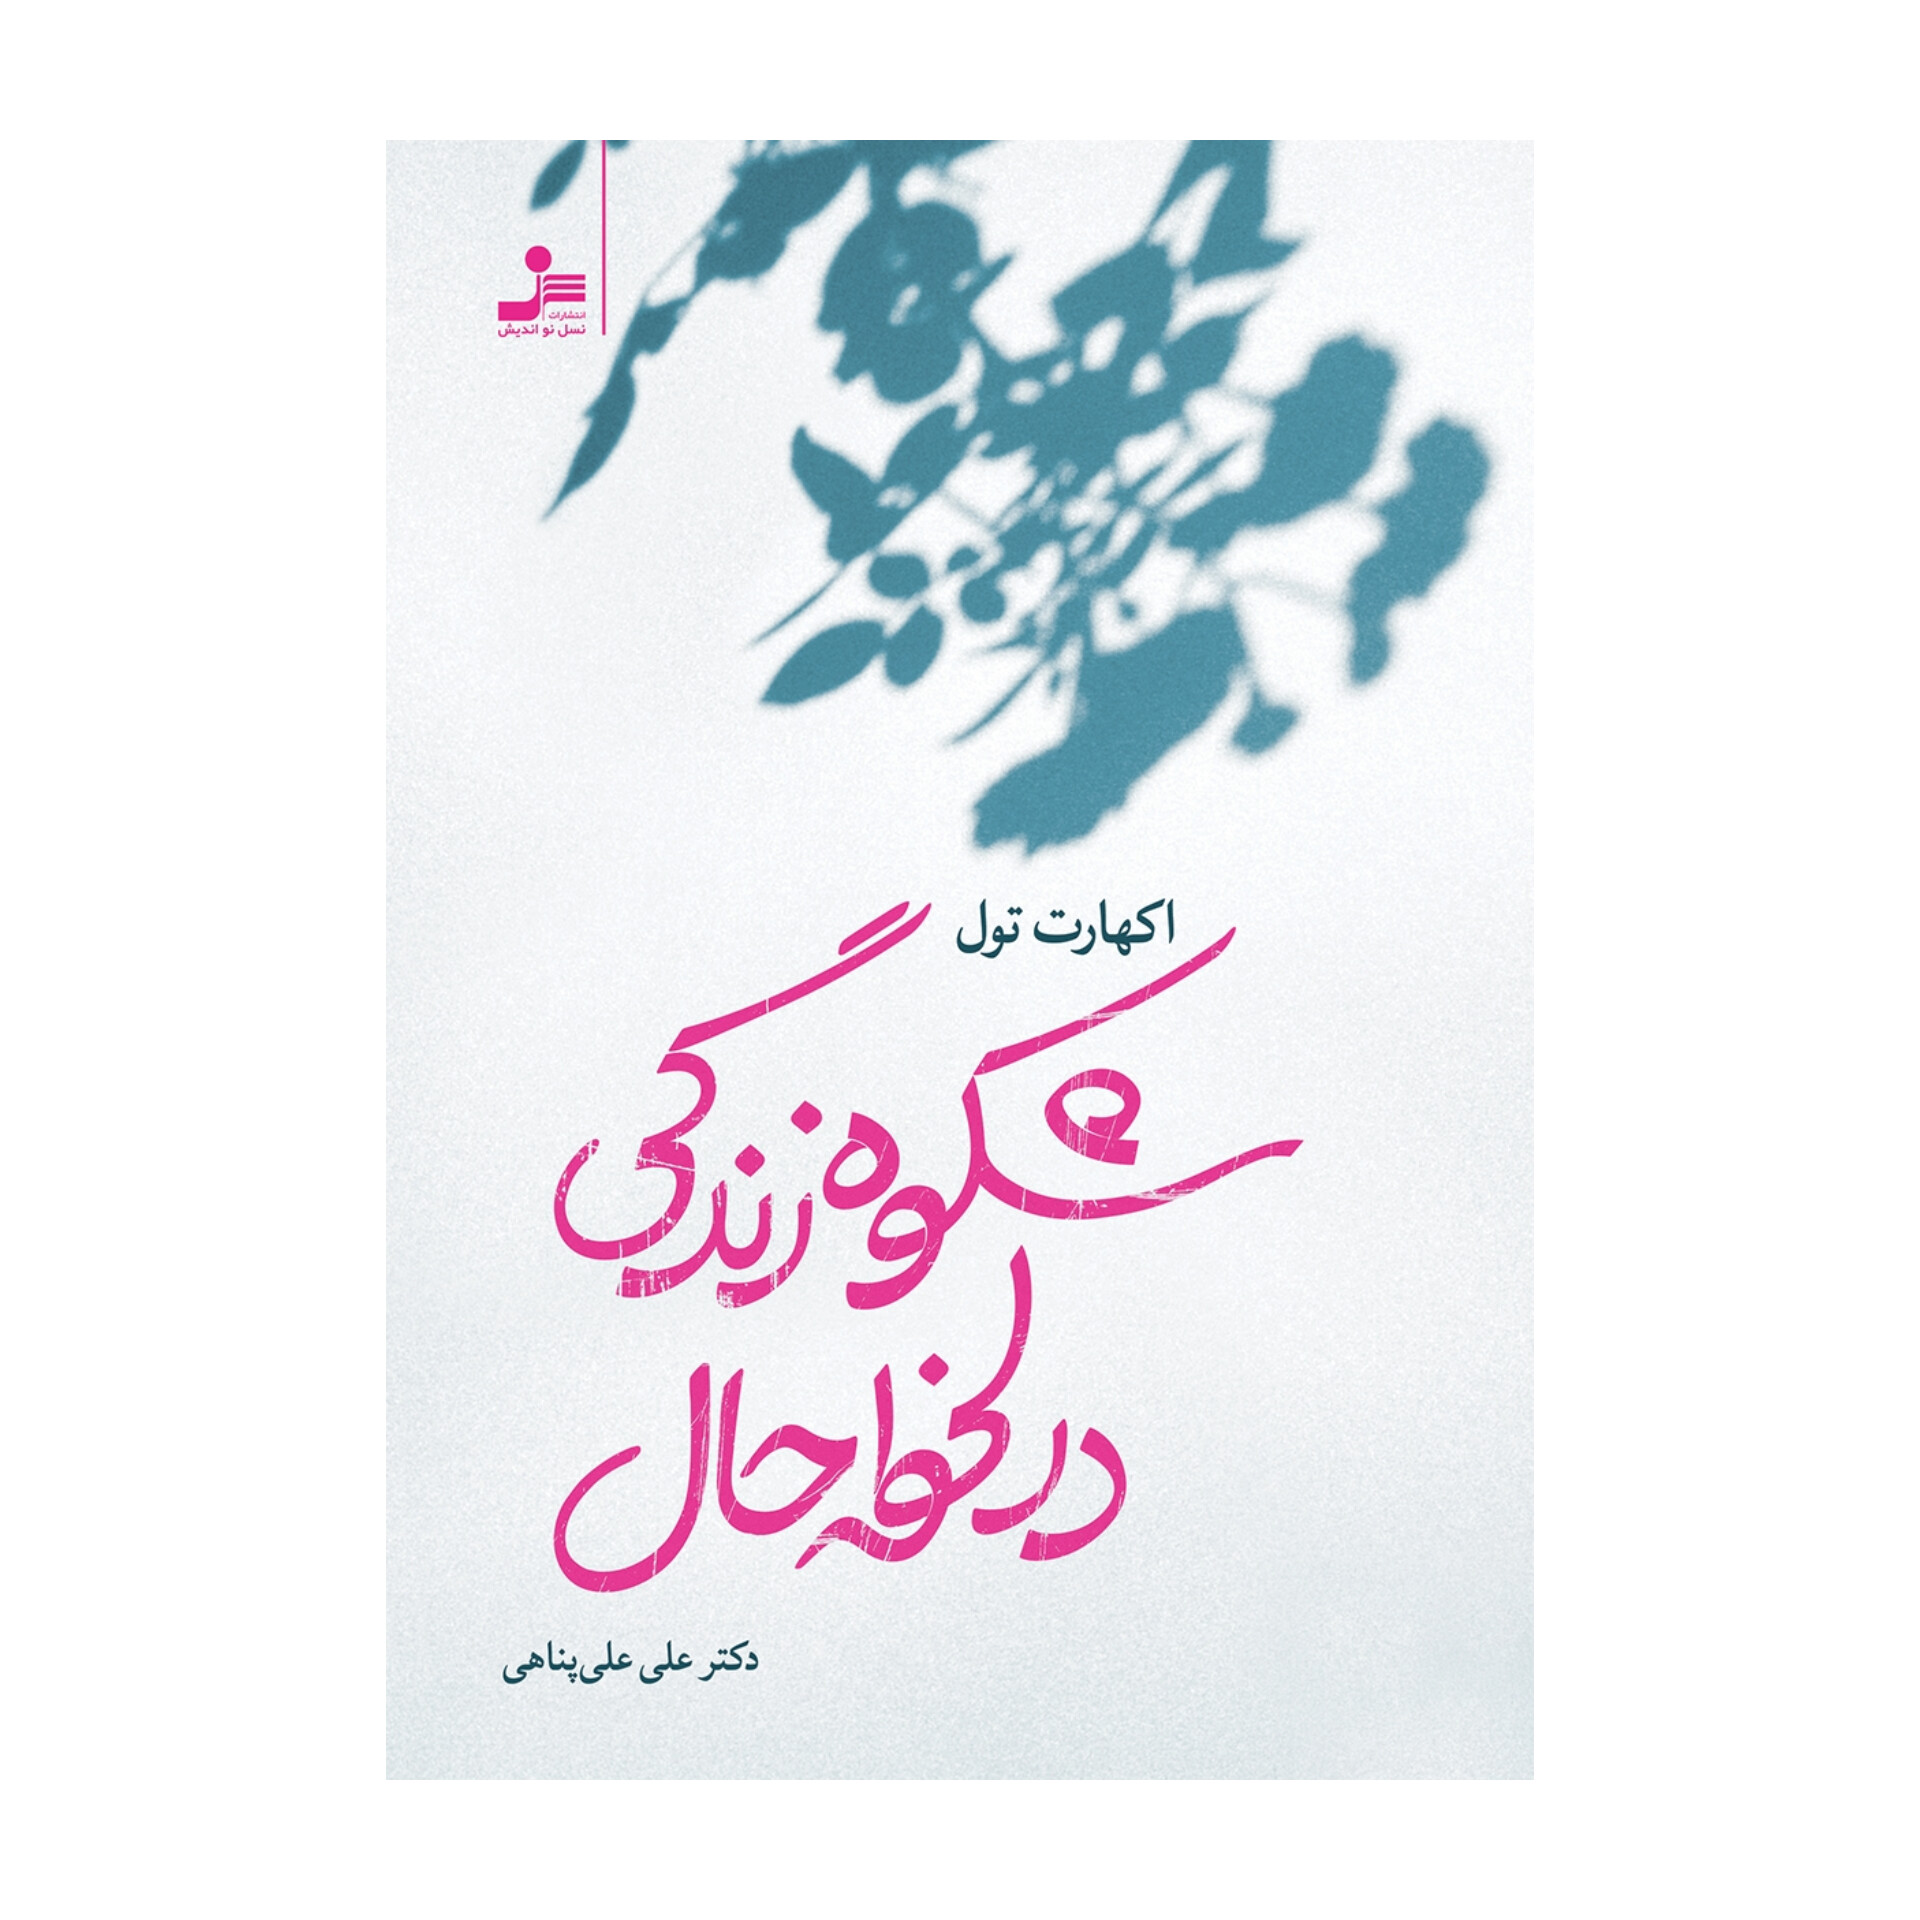 کتاب شکوه زندگی در لحظه حال/ اکهارت تول